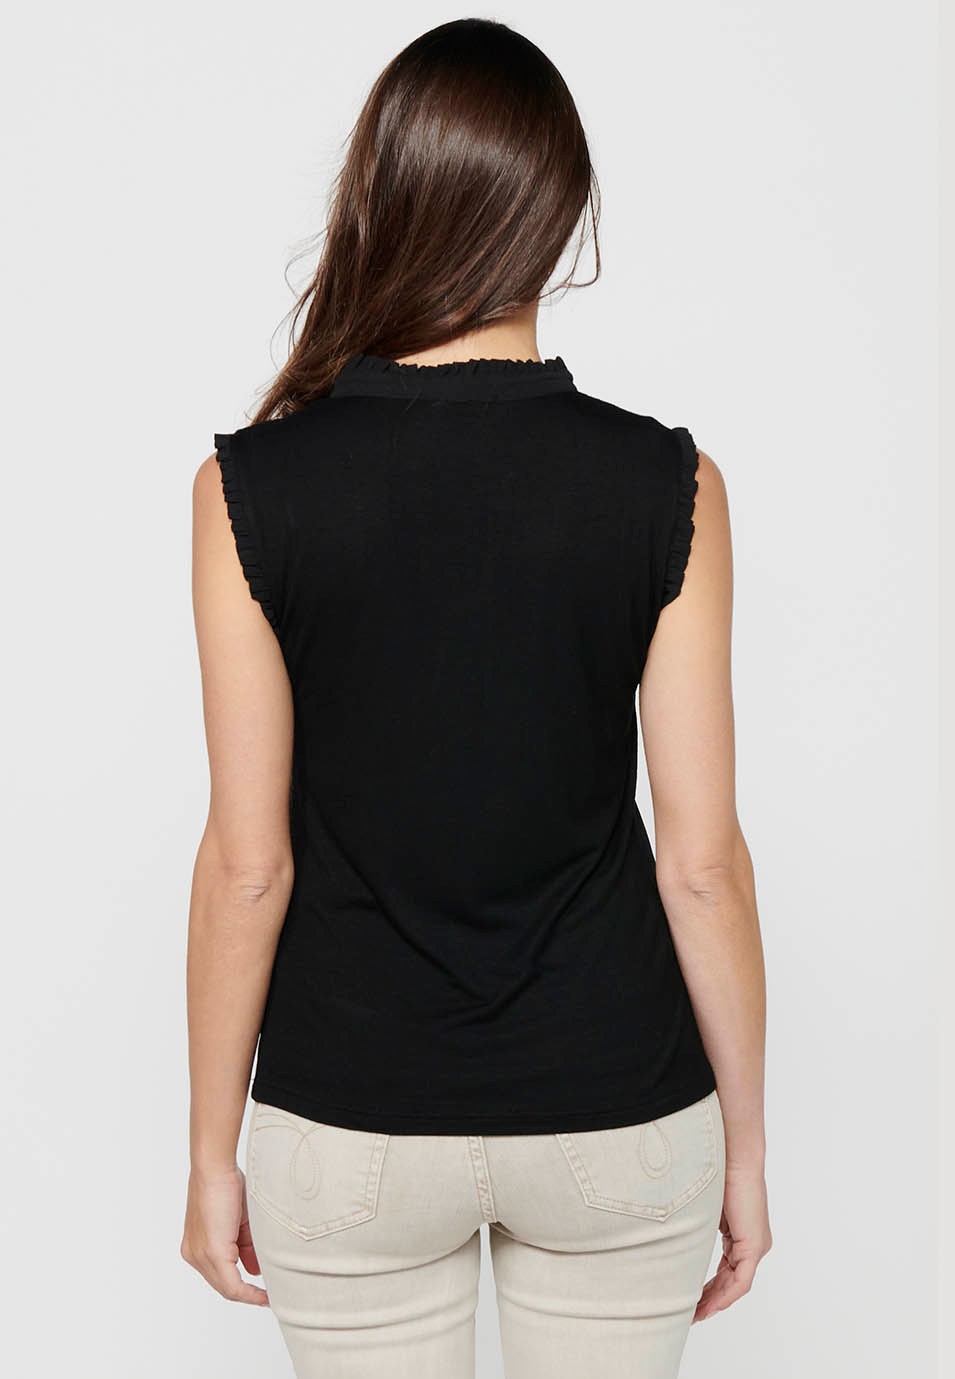 Camiseta fluida sin mangas con Cuello redondo de Color Negro para Mujer 4